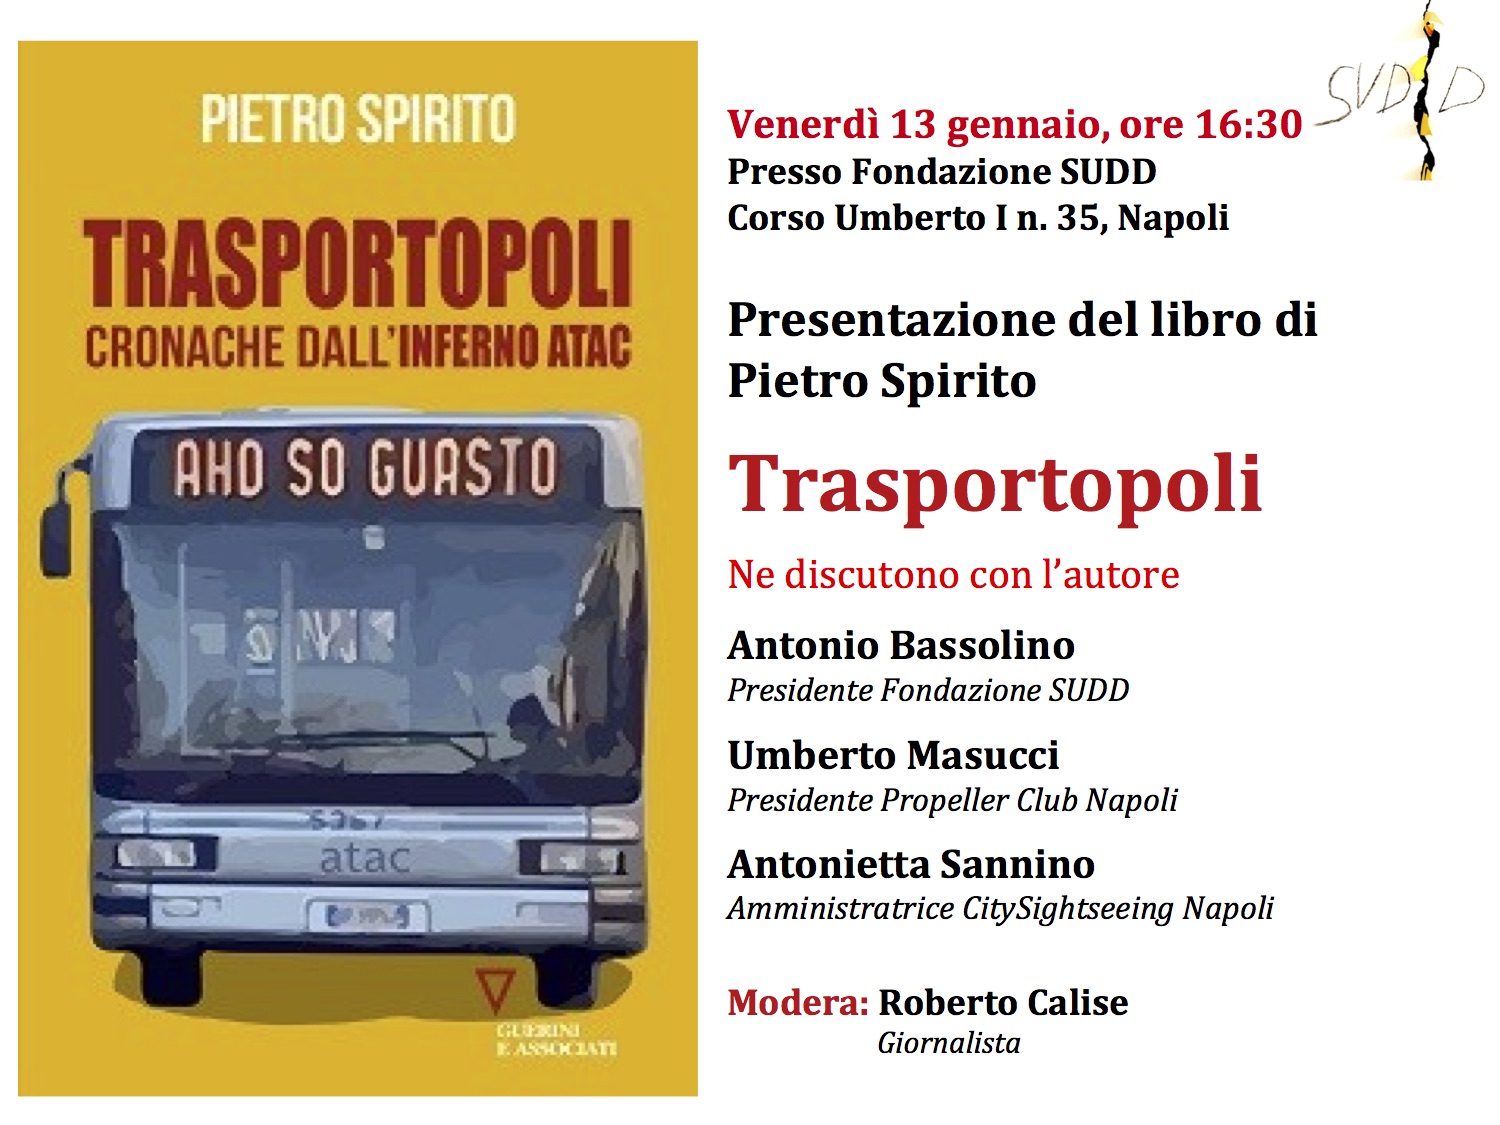 2017.01.12 Pietro Spirito presenta a Napoli la Trasportopoli romana